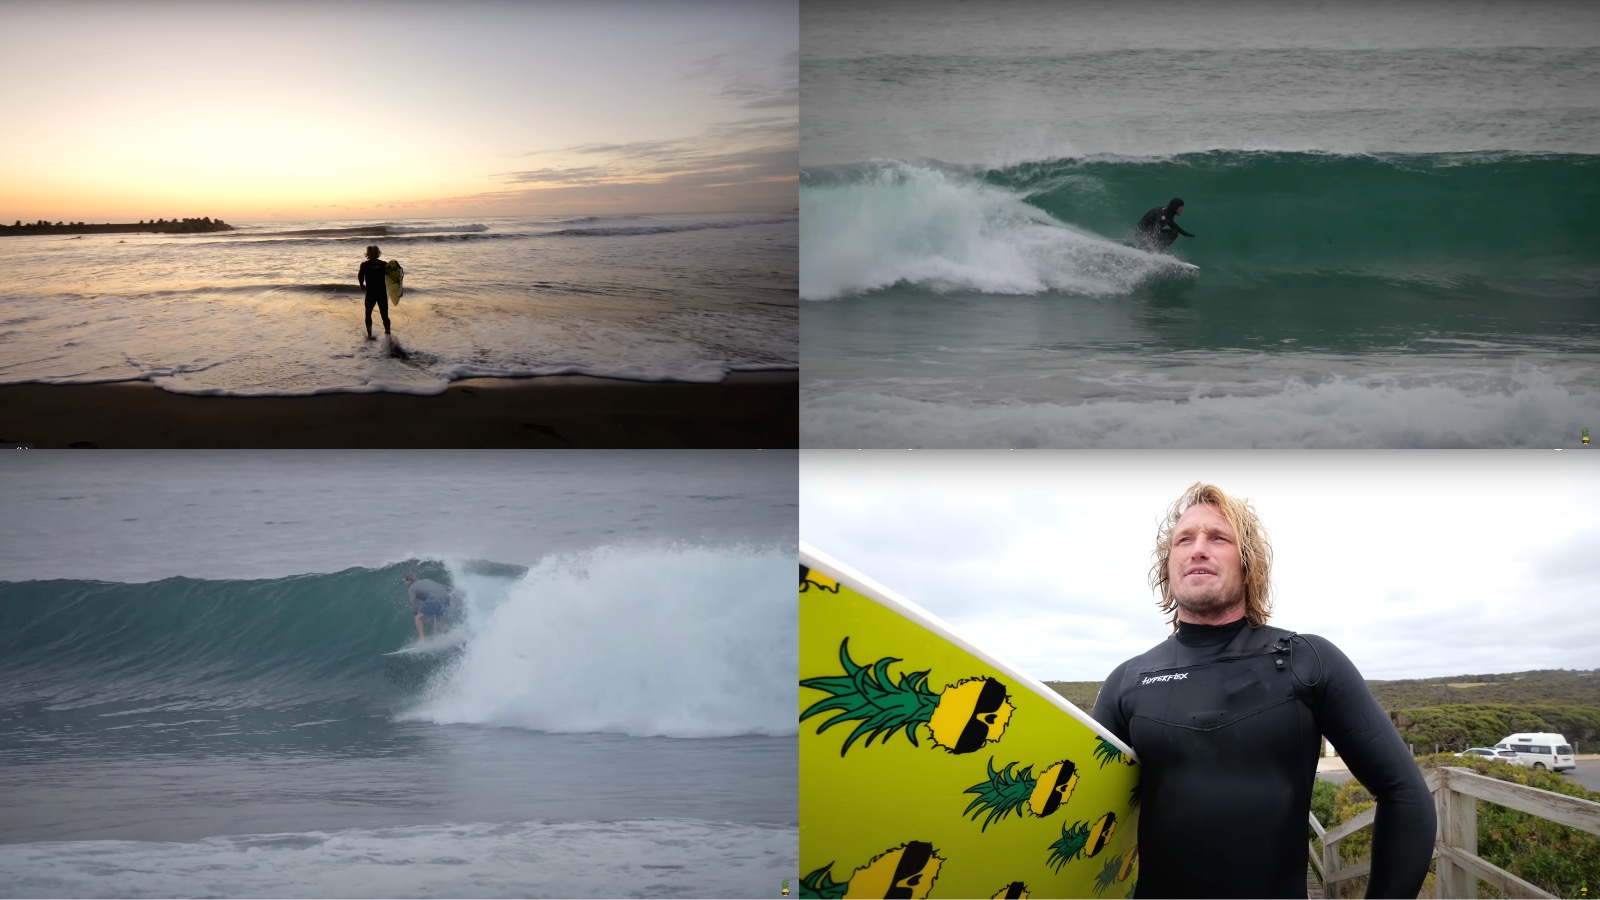 Ben Gravy 7 Seas in 7 Days surfing trip 